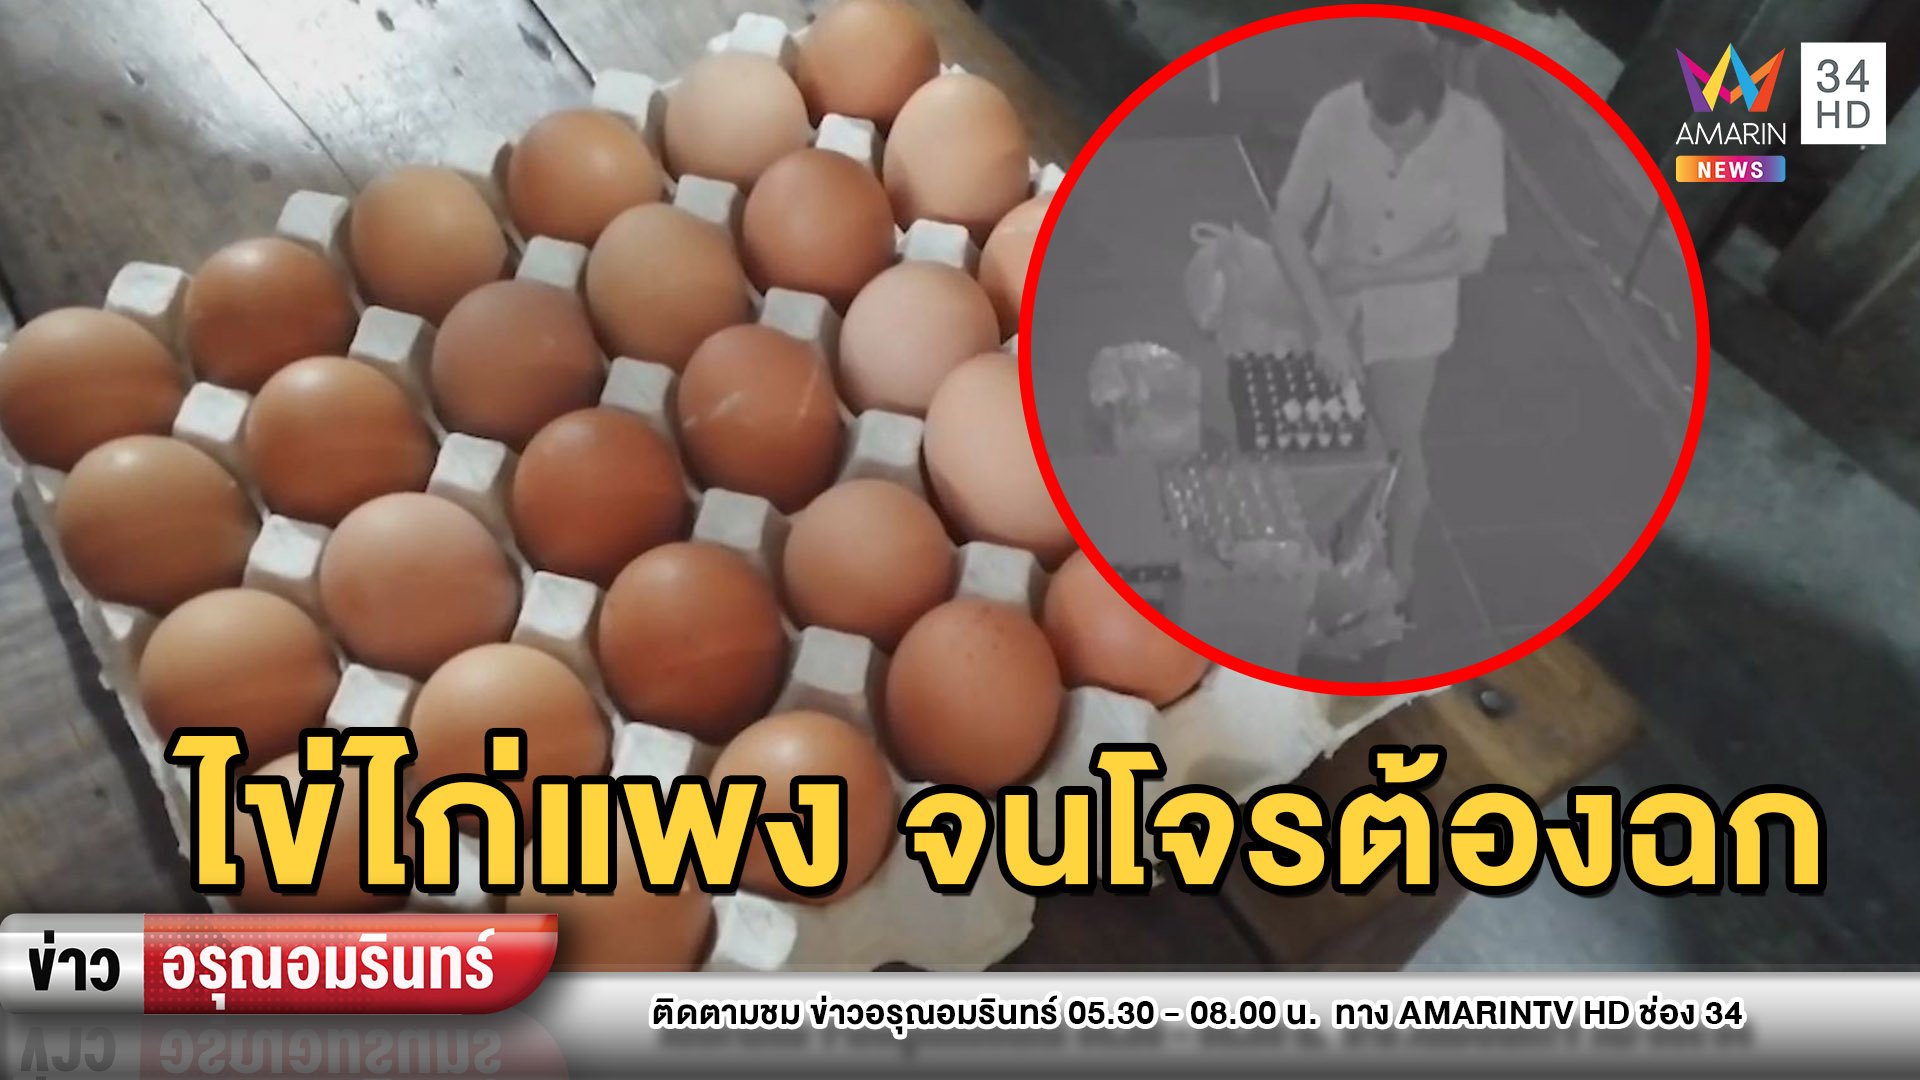 โควิด-19ทำพิษซ้ำ! ราคาไข่ไก่พุ่ง โจรคู่หูหิวโหยย่องฉก 2 แผงหนีลอยนวล | ข่าวอรุณอมรินทร์ | 26 มี.ค. 63 | AMARIN TVHD34